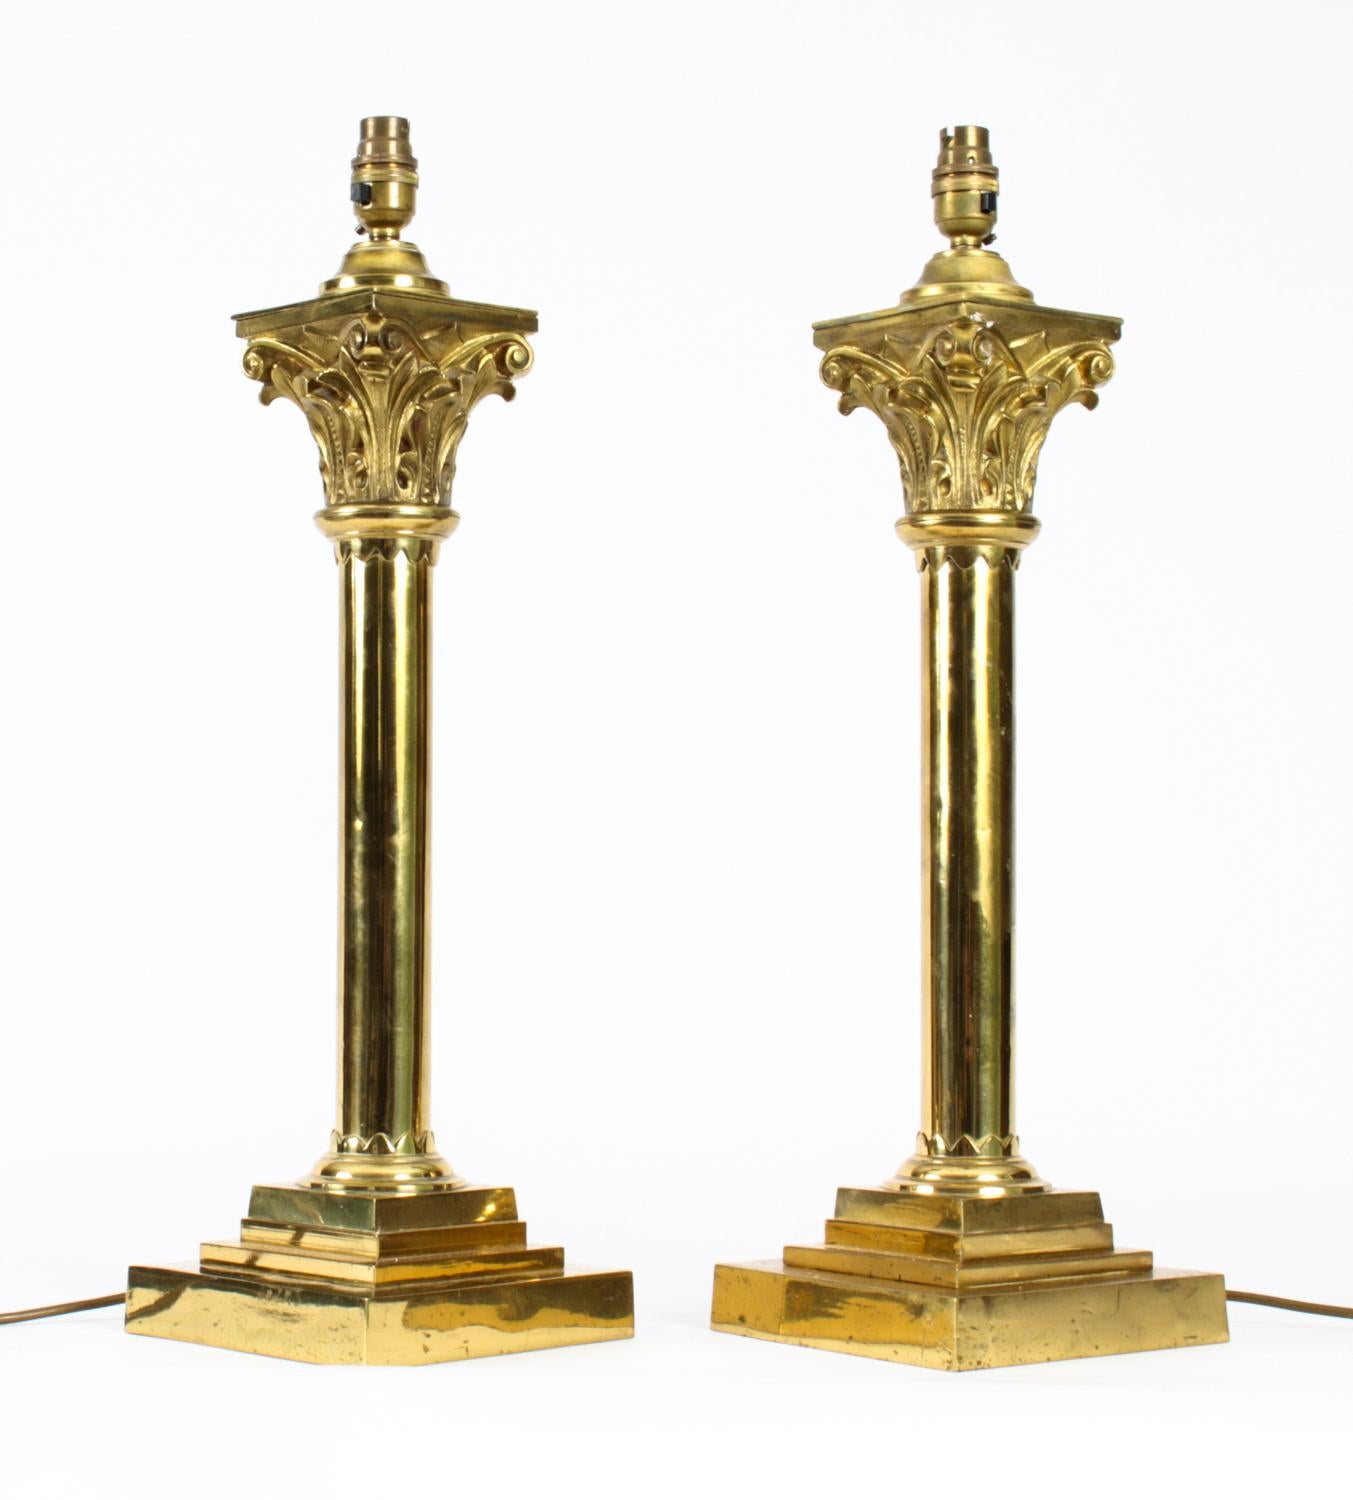 Dies ist ein prächtiges Paar antiker viktorianischer korinthischer Säulen-Tischlampen aus Messing, die jetzt von Öllampen auf Elektrizität umgestellt wurden, aus dem späten 19.

Dieses opulente Paar antiker Tischlampen zeichnet sich durch